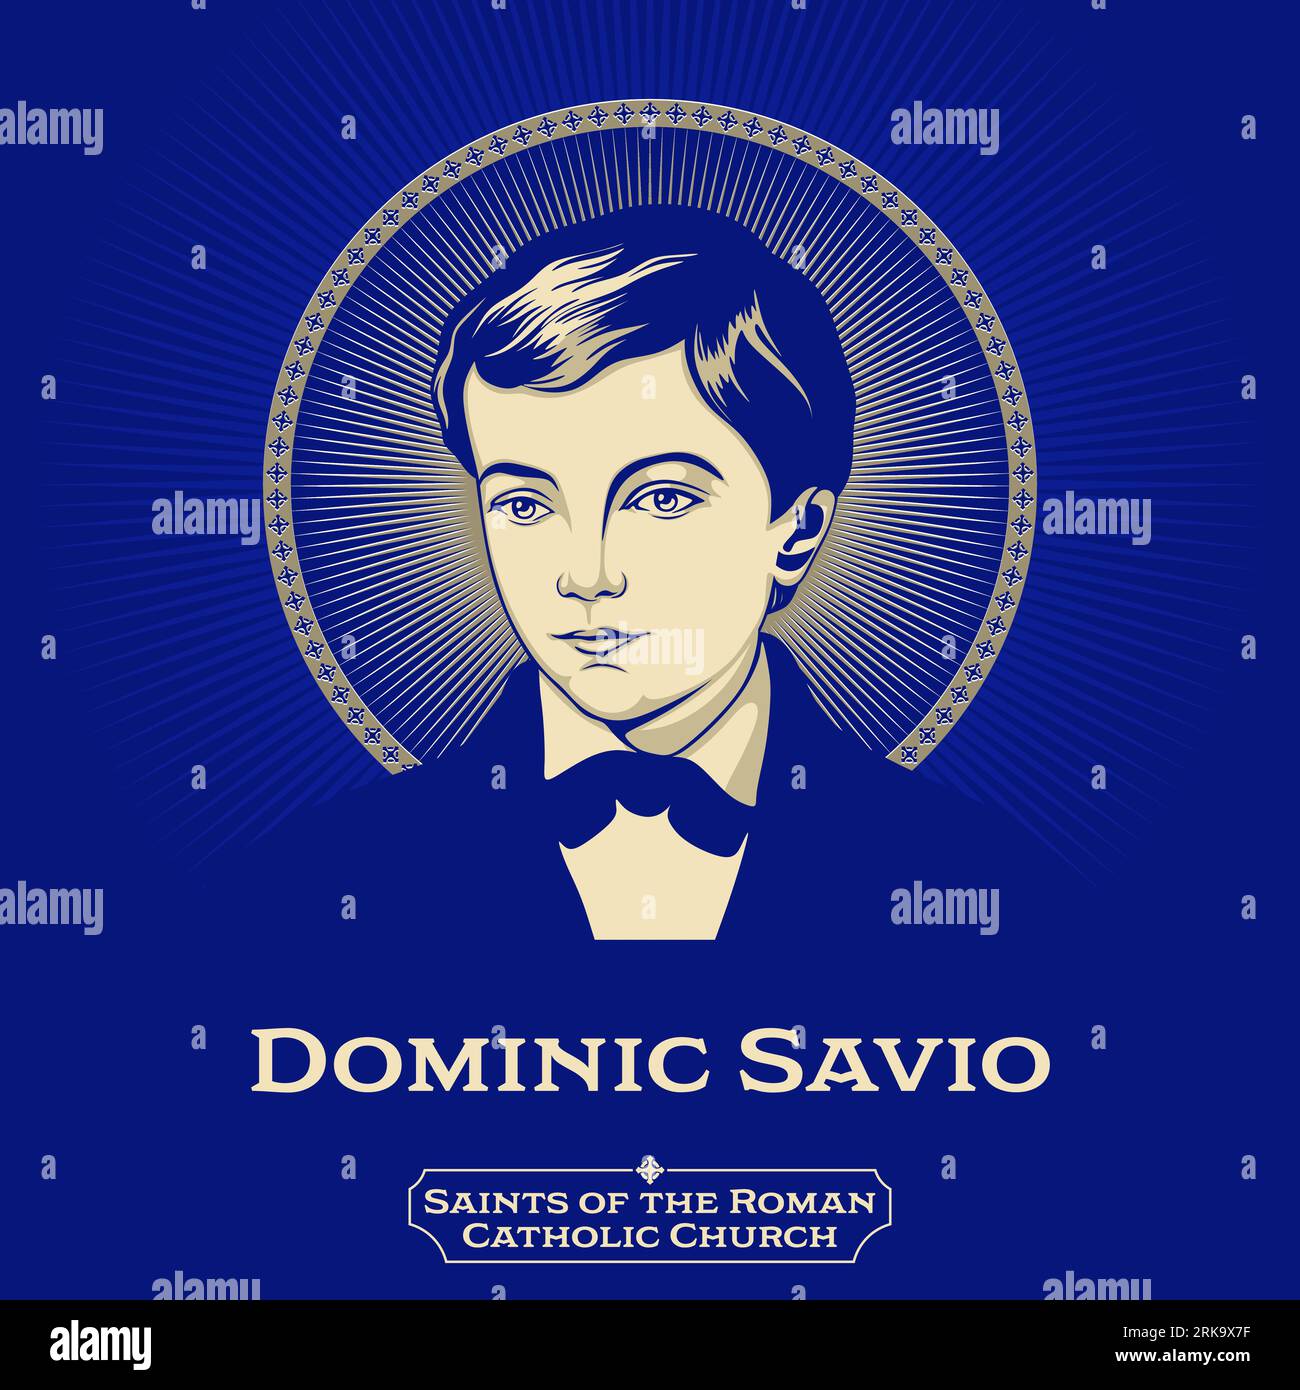 Saints catholiques. Dominic Savio (1842-1857) était un étudiant italien de John Bosco. Il étudiait pour devenir prêtre quand il est tombé malade et est mort. Illustration de Vecteur